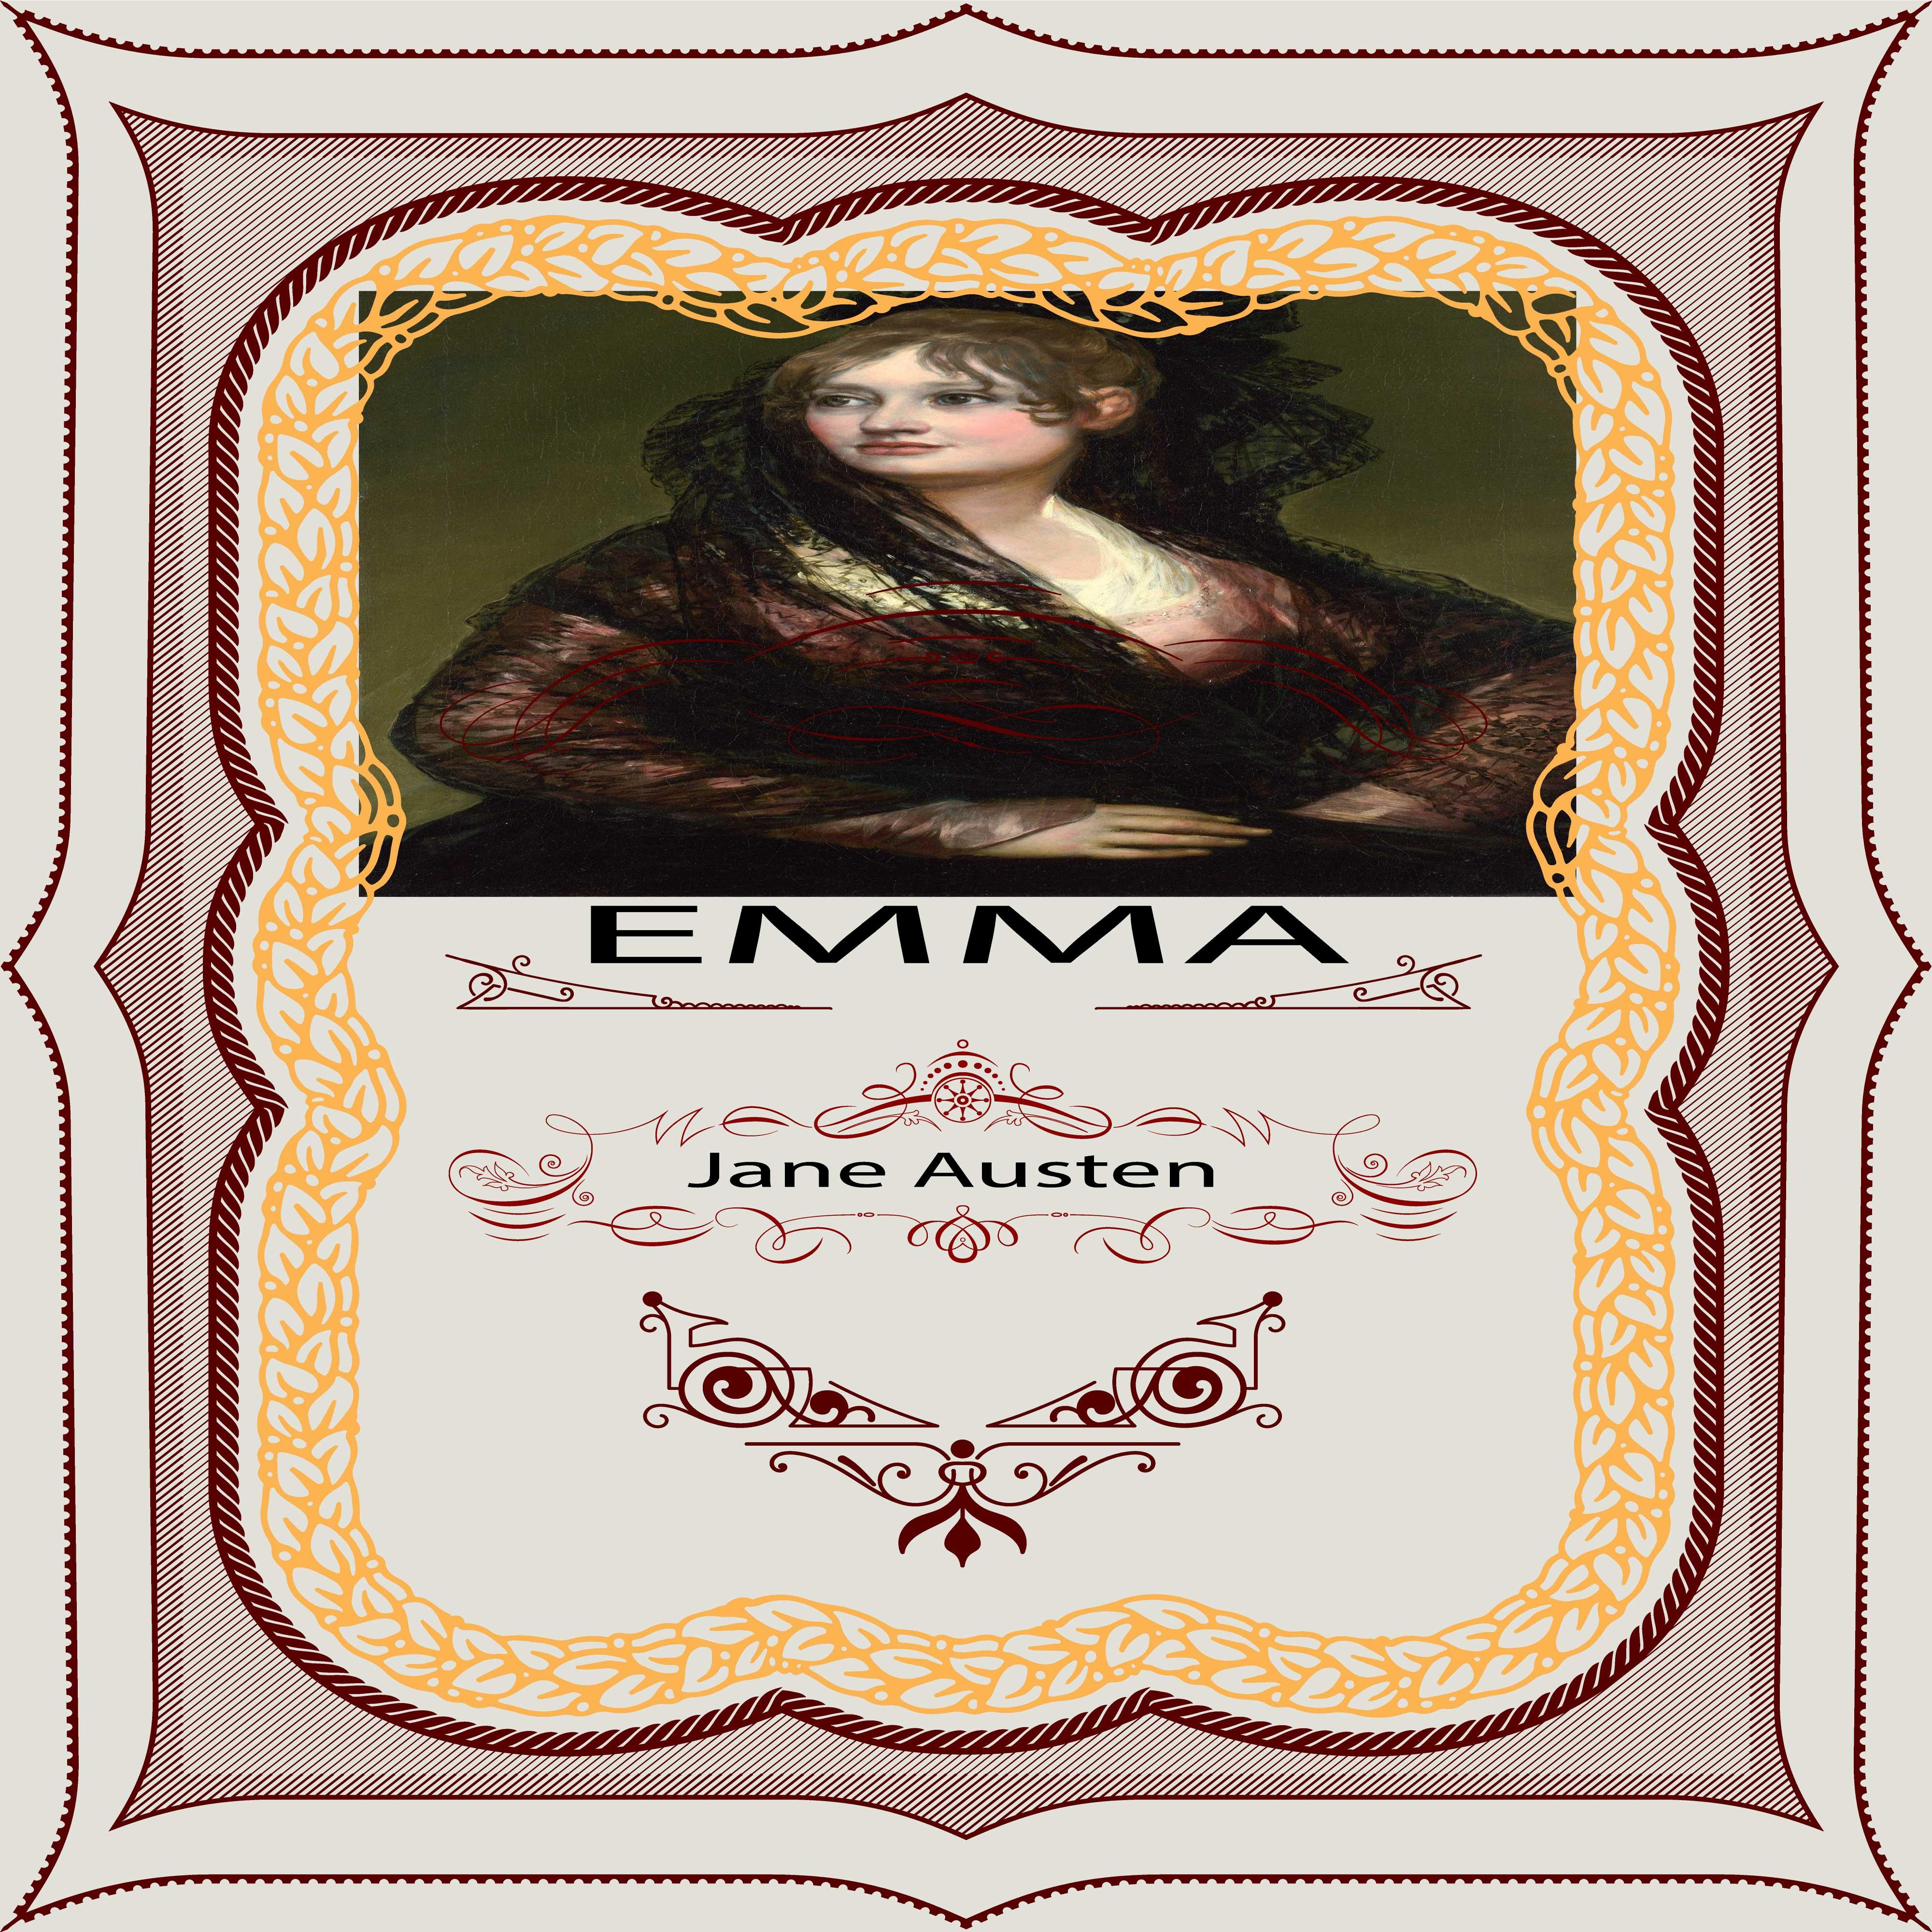 Jane Austen: Emma, Pt. 1, Chapter 14